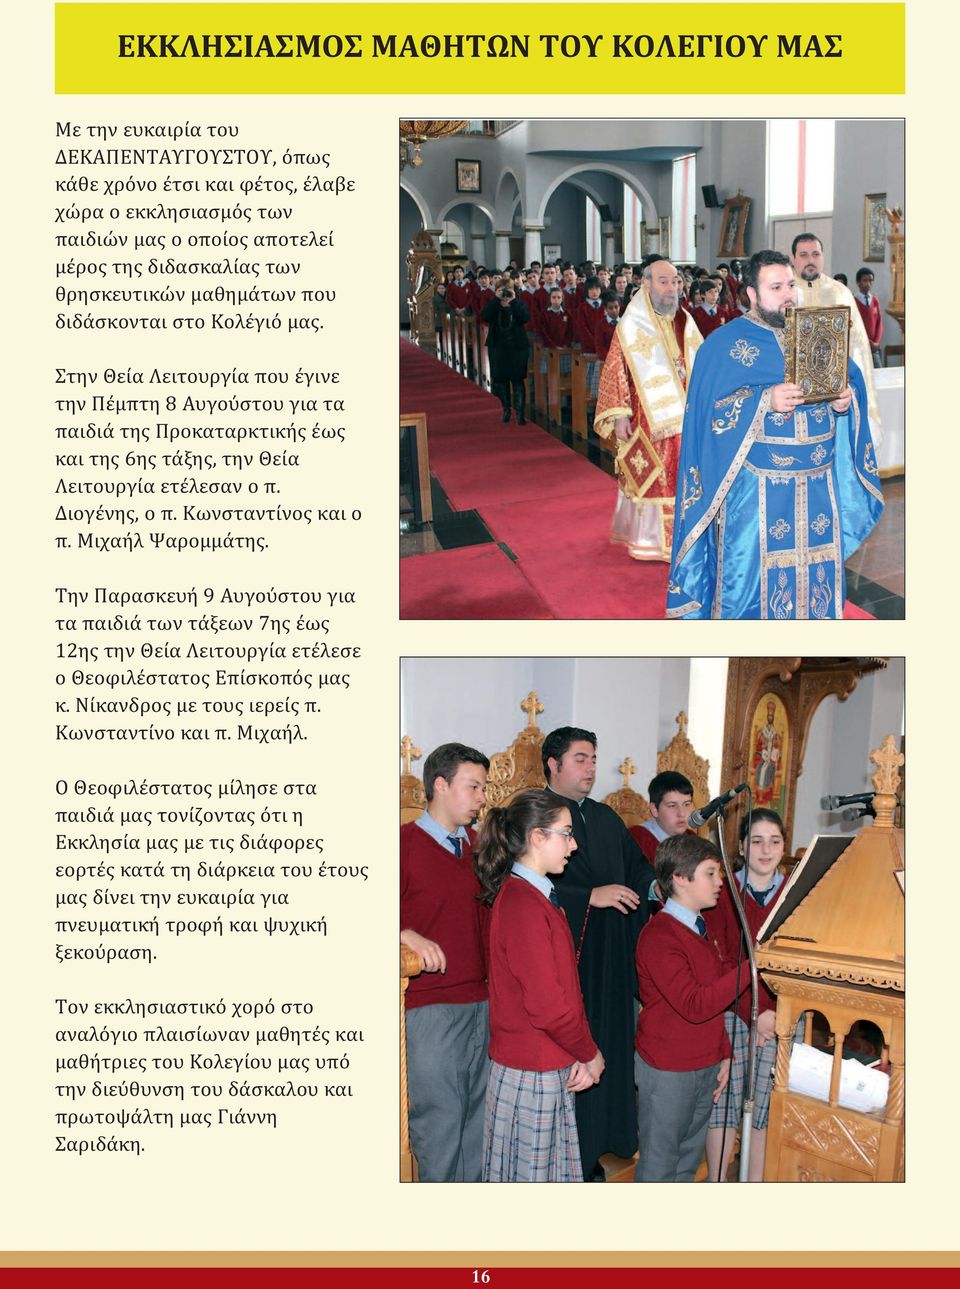 Διογένης, ο π. Κωνσταντίνος και ο π. Μιχαήλ Ψαρομμάτης. Την Παρασκευή 9 Αυγούστου για τα παιδιά των τάξεων 7ης έως 12ης την Θεία Λειτουργία ετέλεσε ο Θεοφιλέστατος Επίσκοπός μας κ.